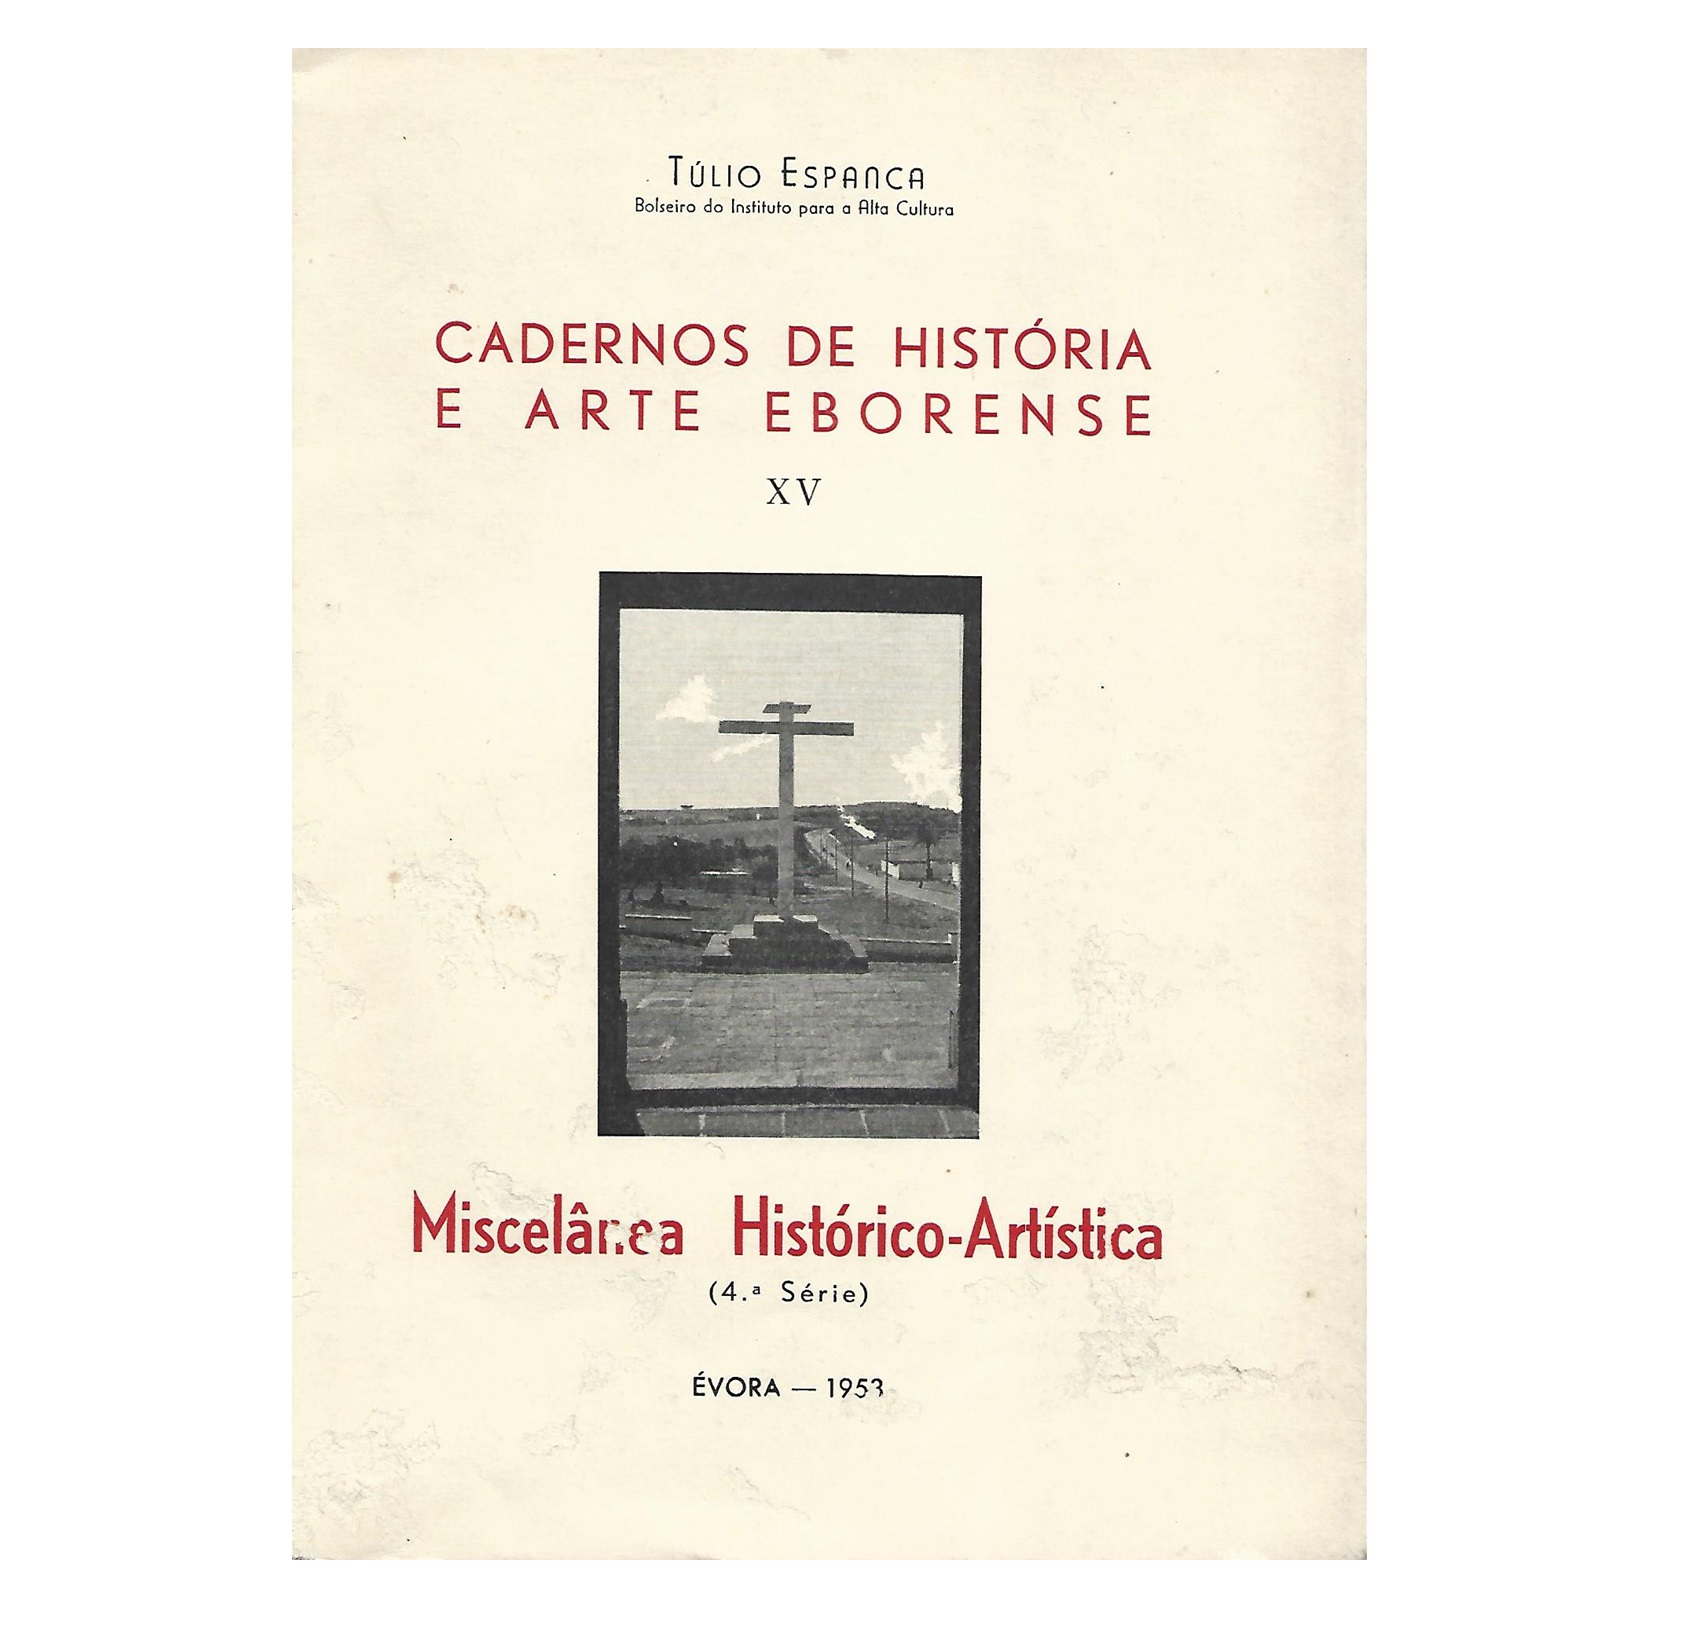 MISCELÂNEA HISTÓRICO-ARTÍSTICA (1953)